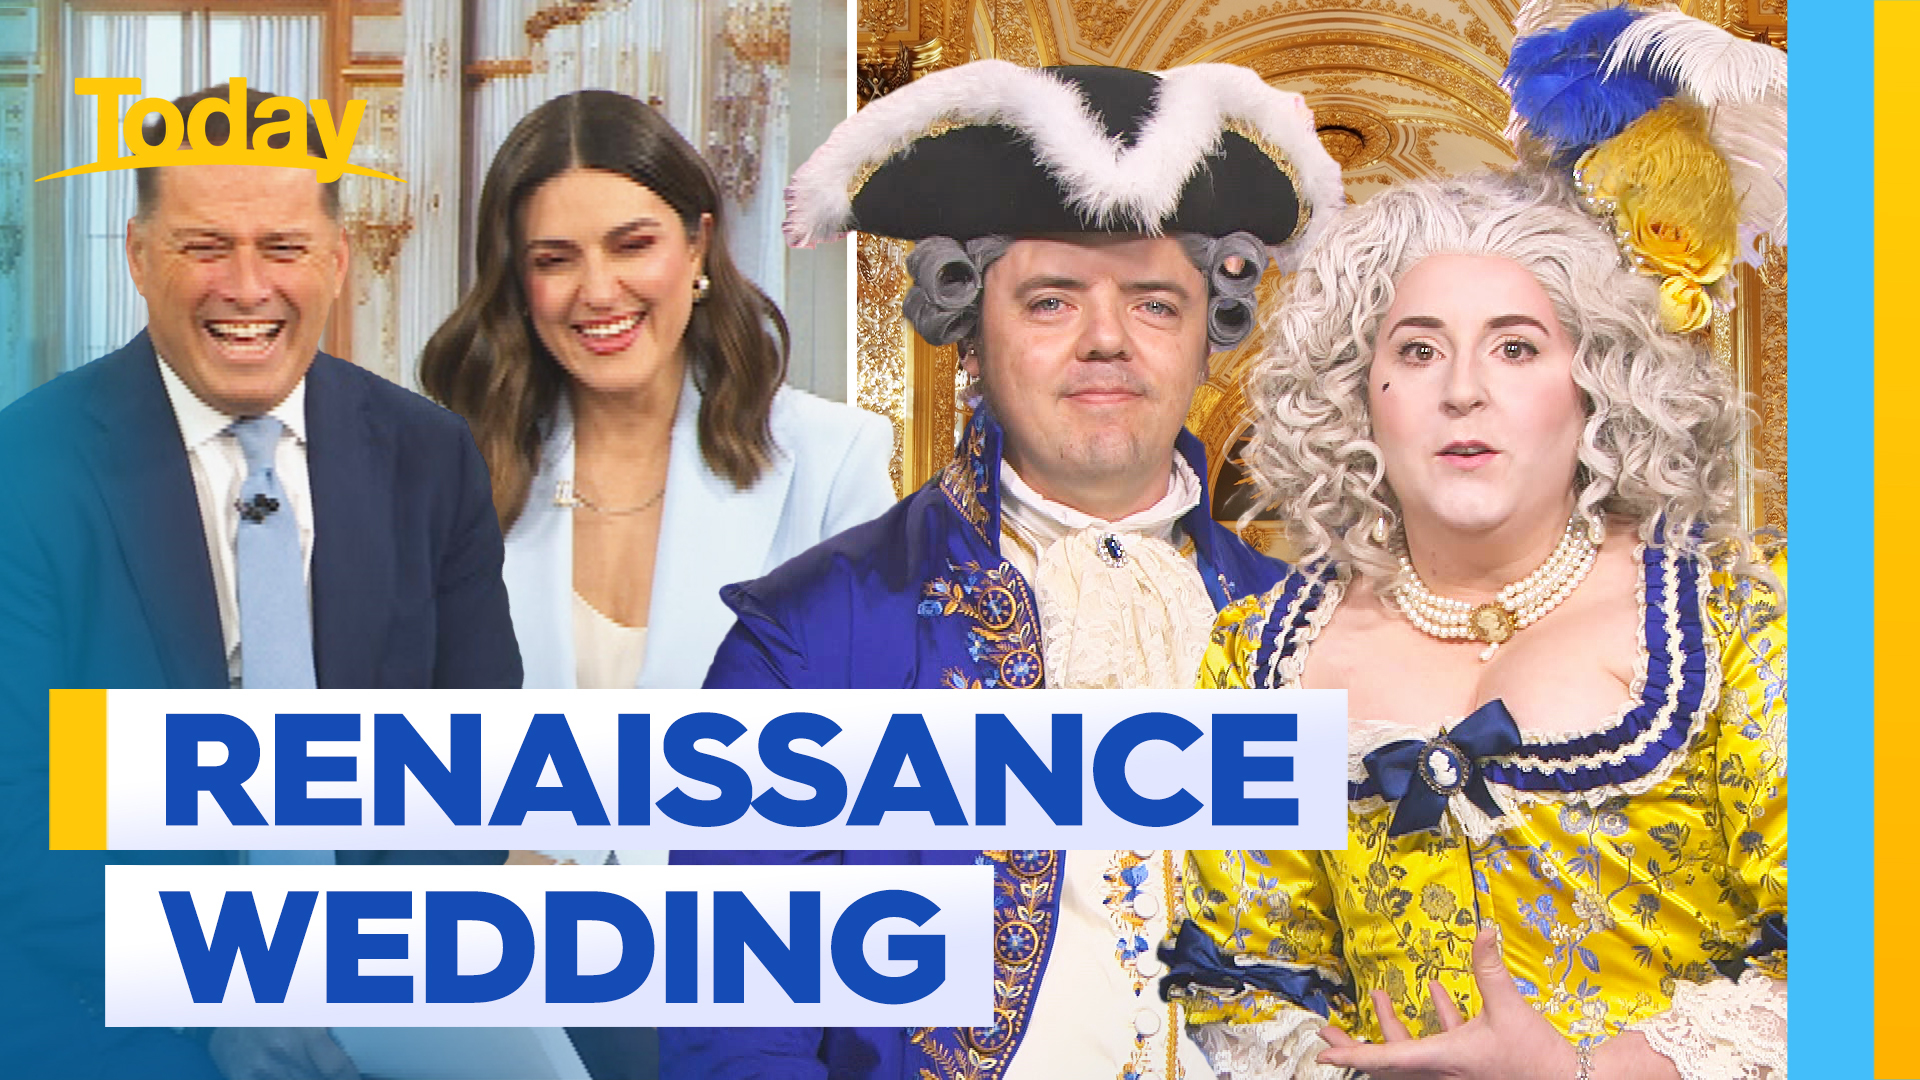 Aussie Bridgerton fans planning Renaissance inspired wedding